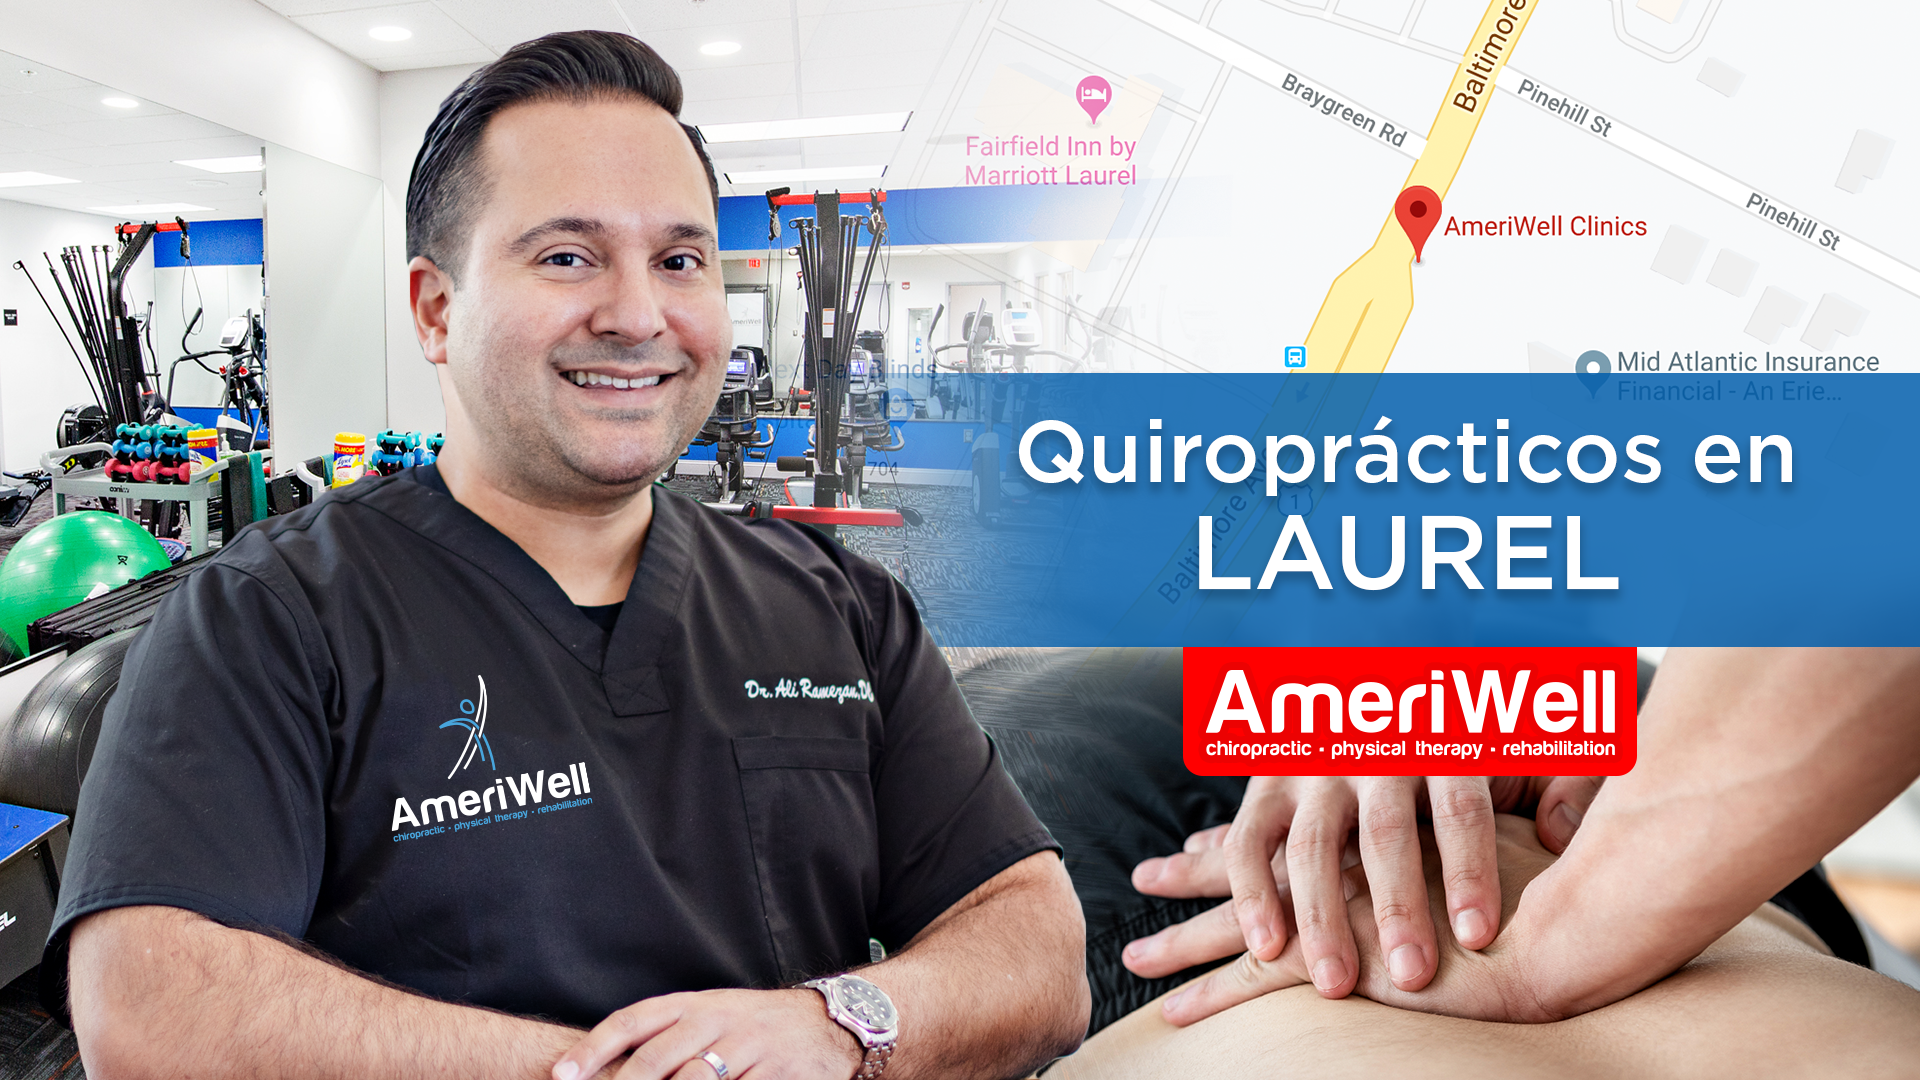 Laurel - Ameriwell Clinics los mejores Quiroprácticos